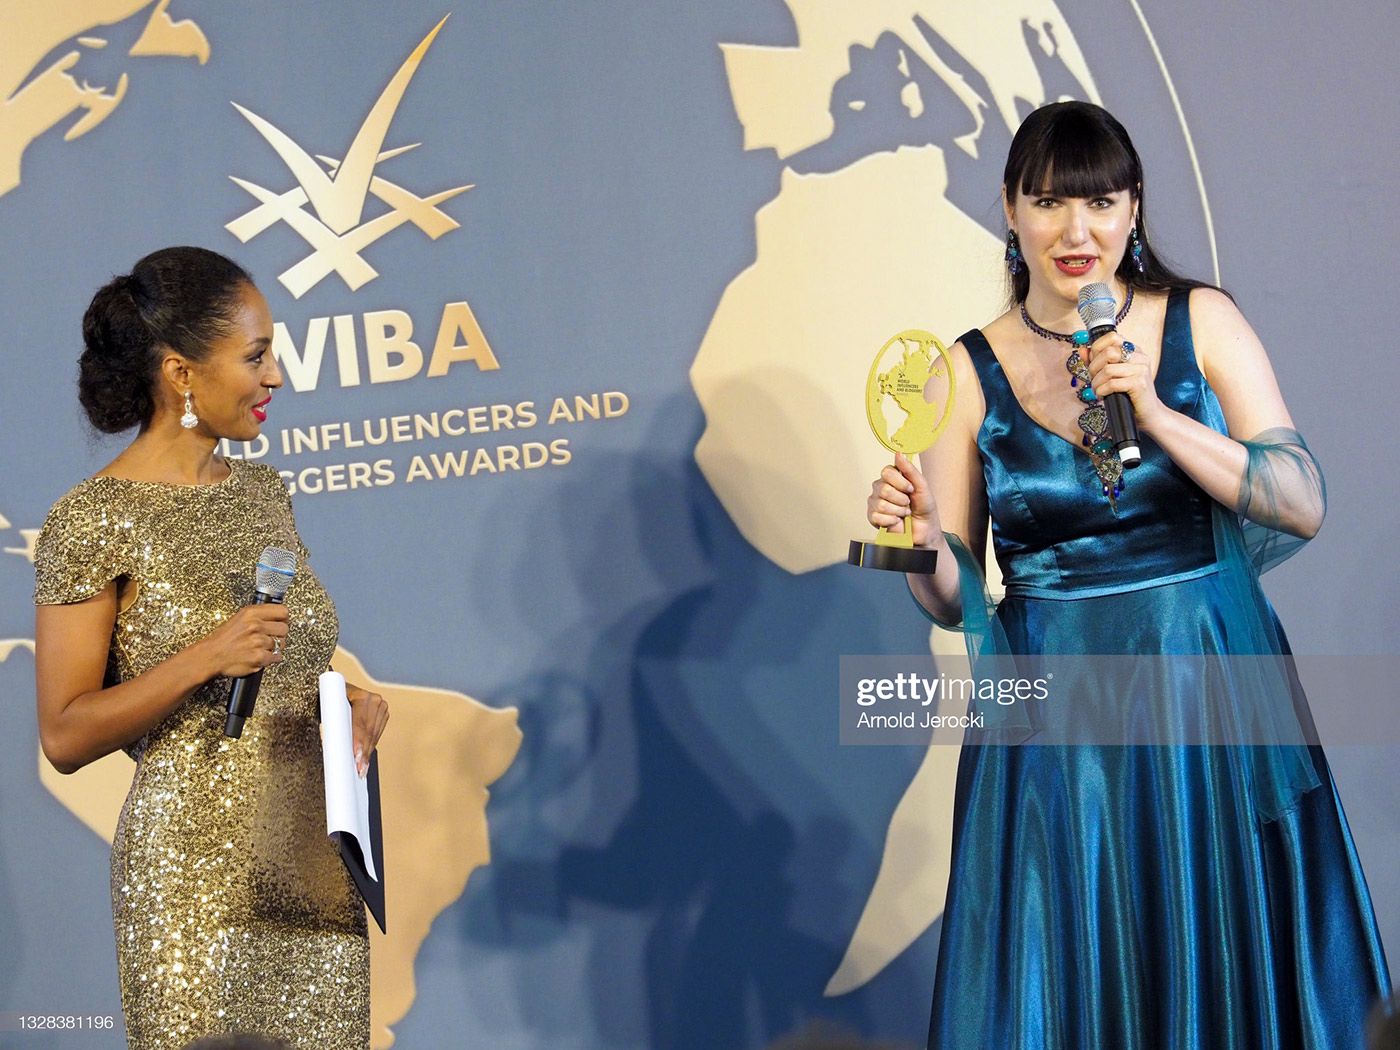 Катерина Перез получает награду WIBA Jewellery Influencer Award на Каннском кинофестивале 2021